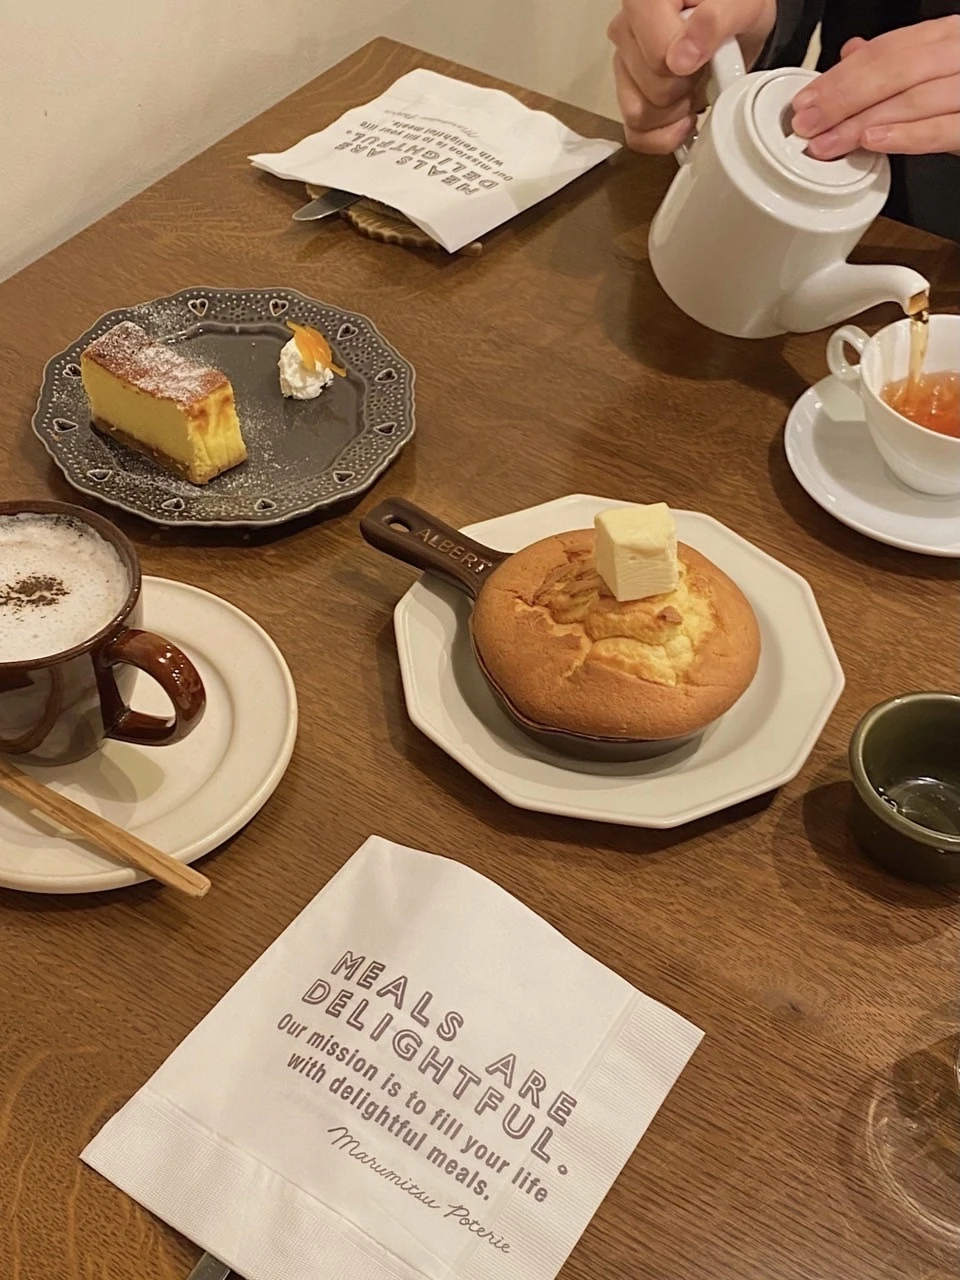 渋谷と代々木公園駅の間にあるカフェ「Meals Are Delightful」のパンケーキ ラムバターとベイクドチーズケーキ、ストレートティー、カフェラテ